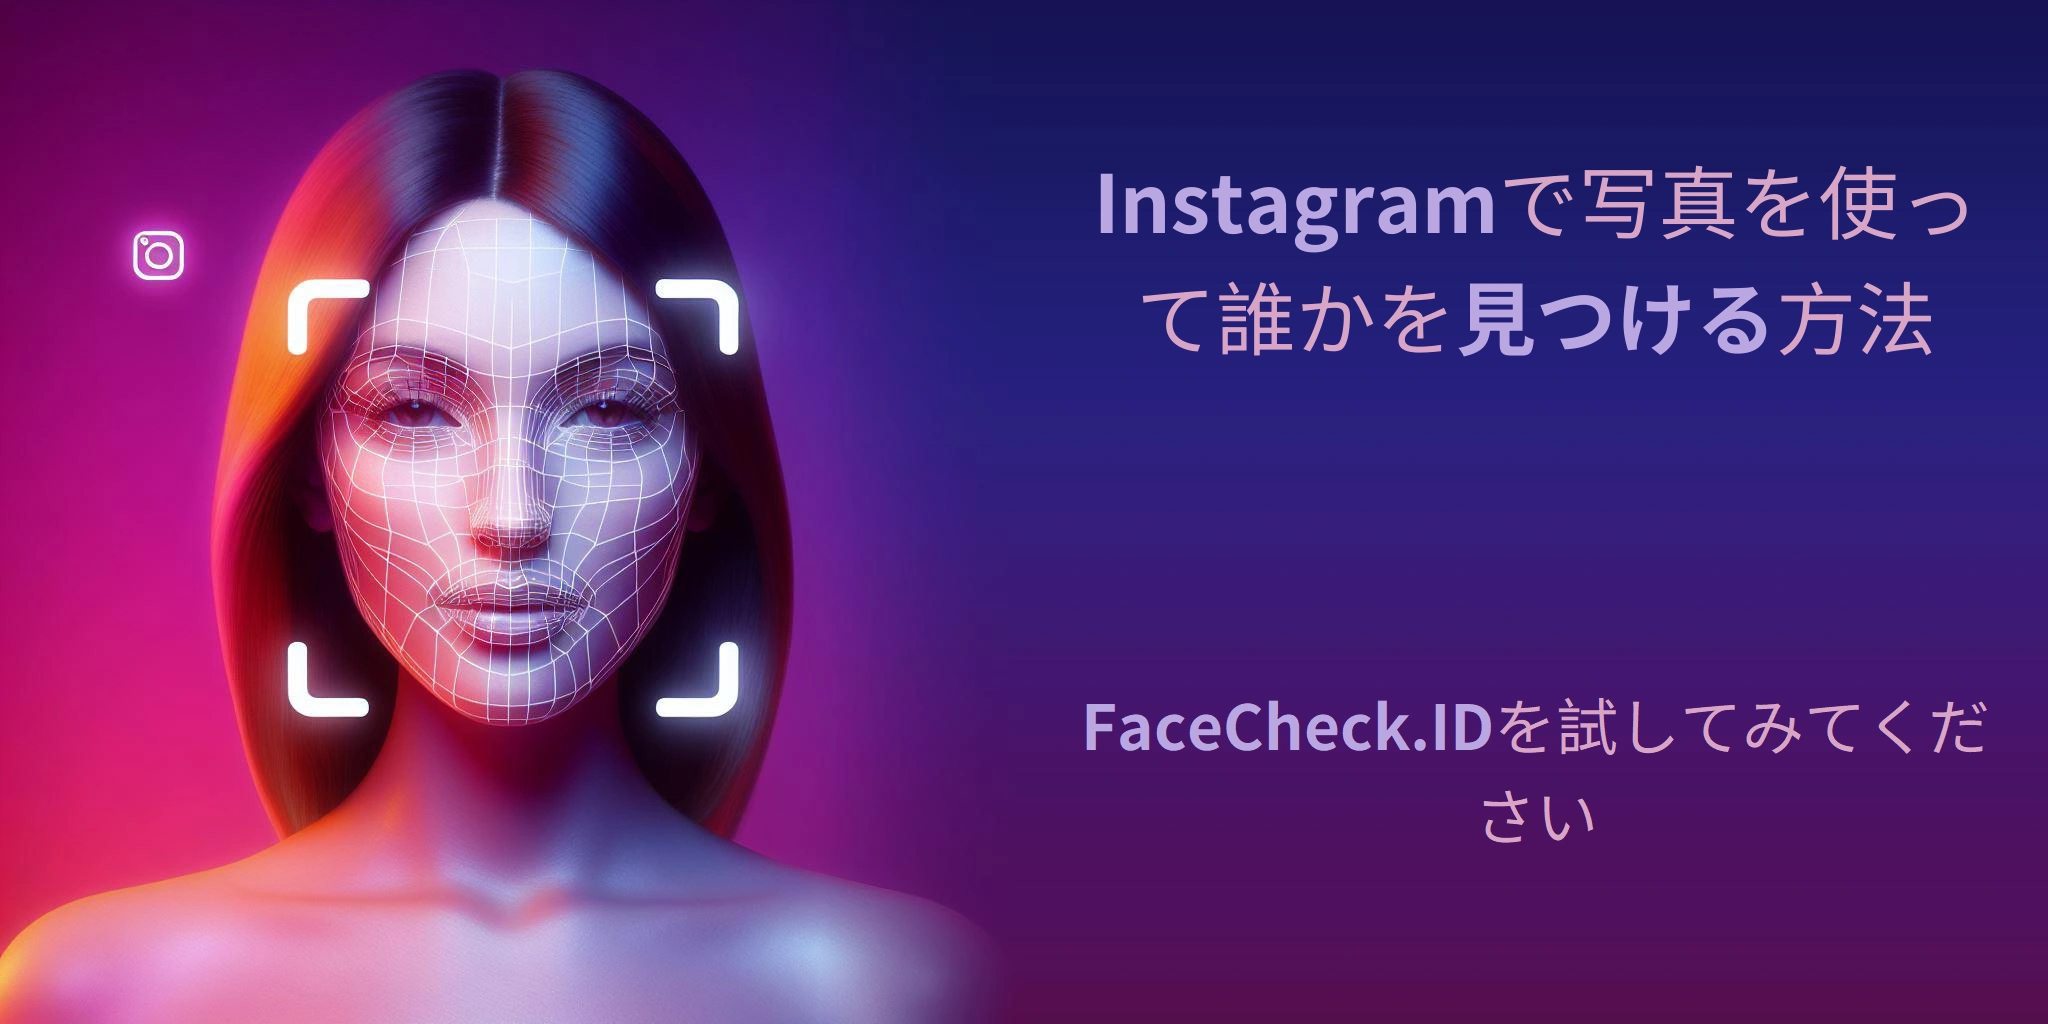 Instagramで写真を使って誰かを見つける方法 FaceCheck.IDを試してみてください